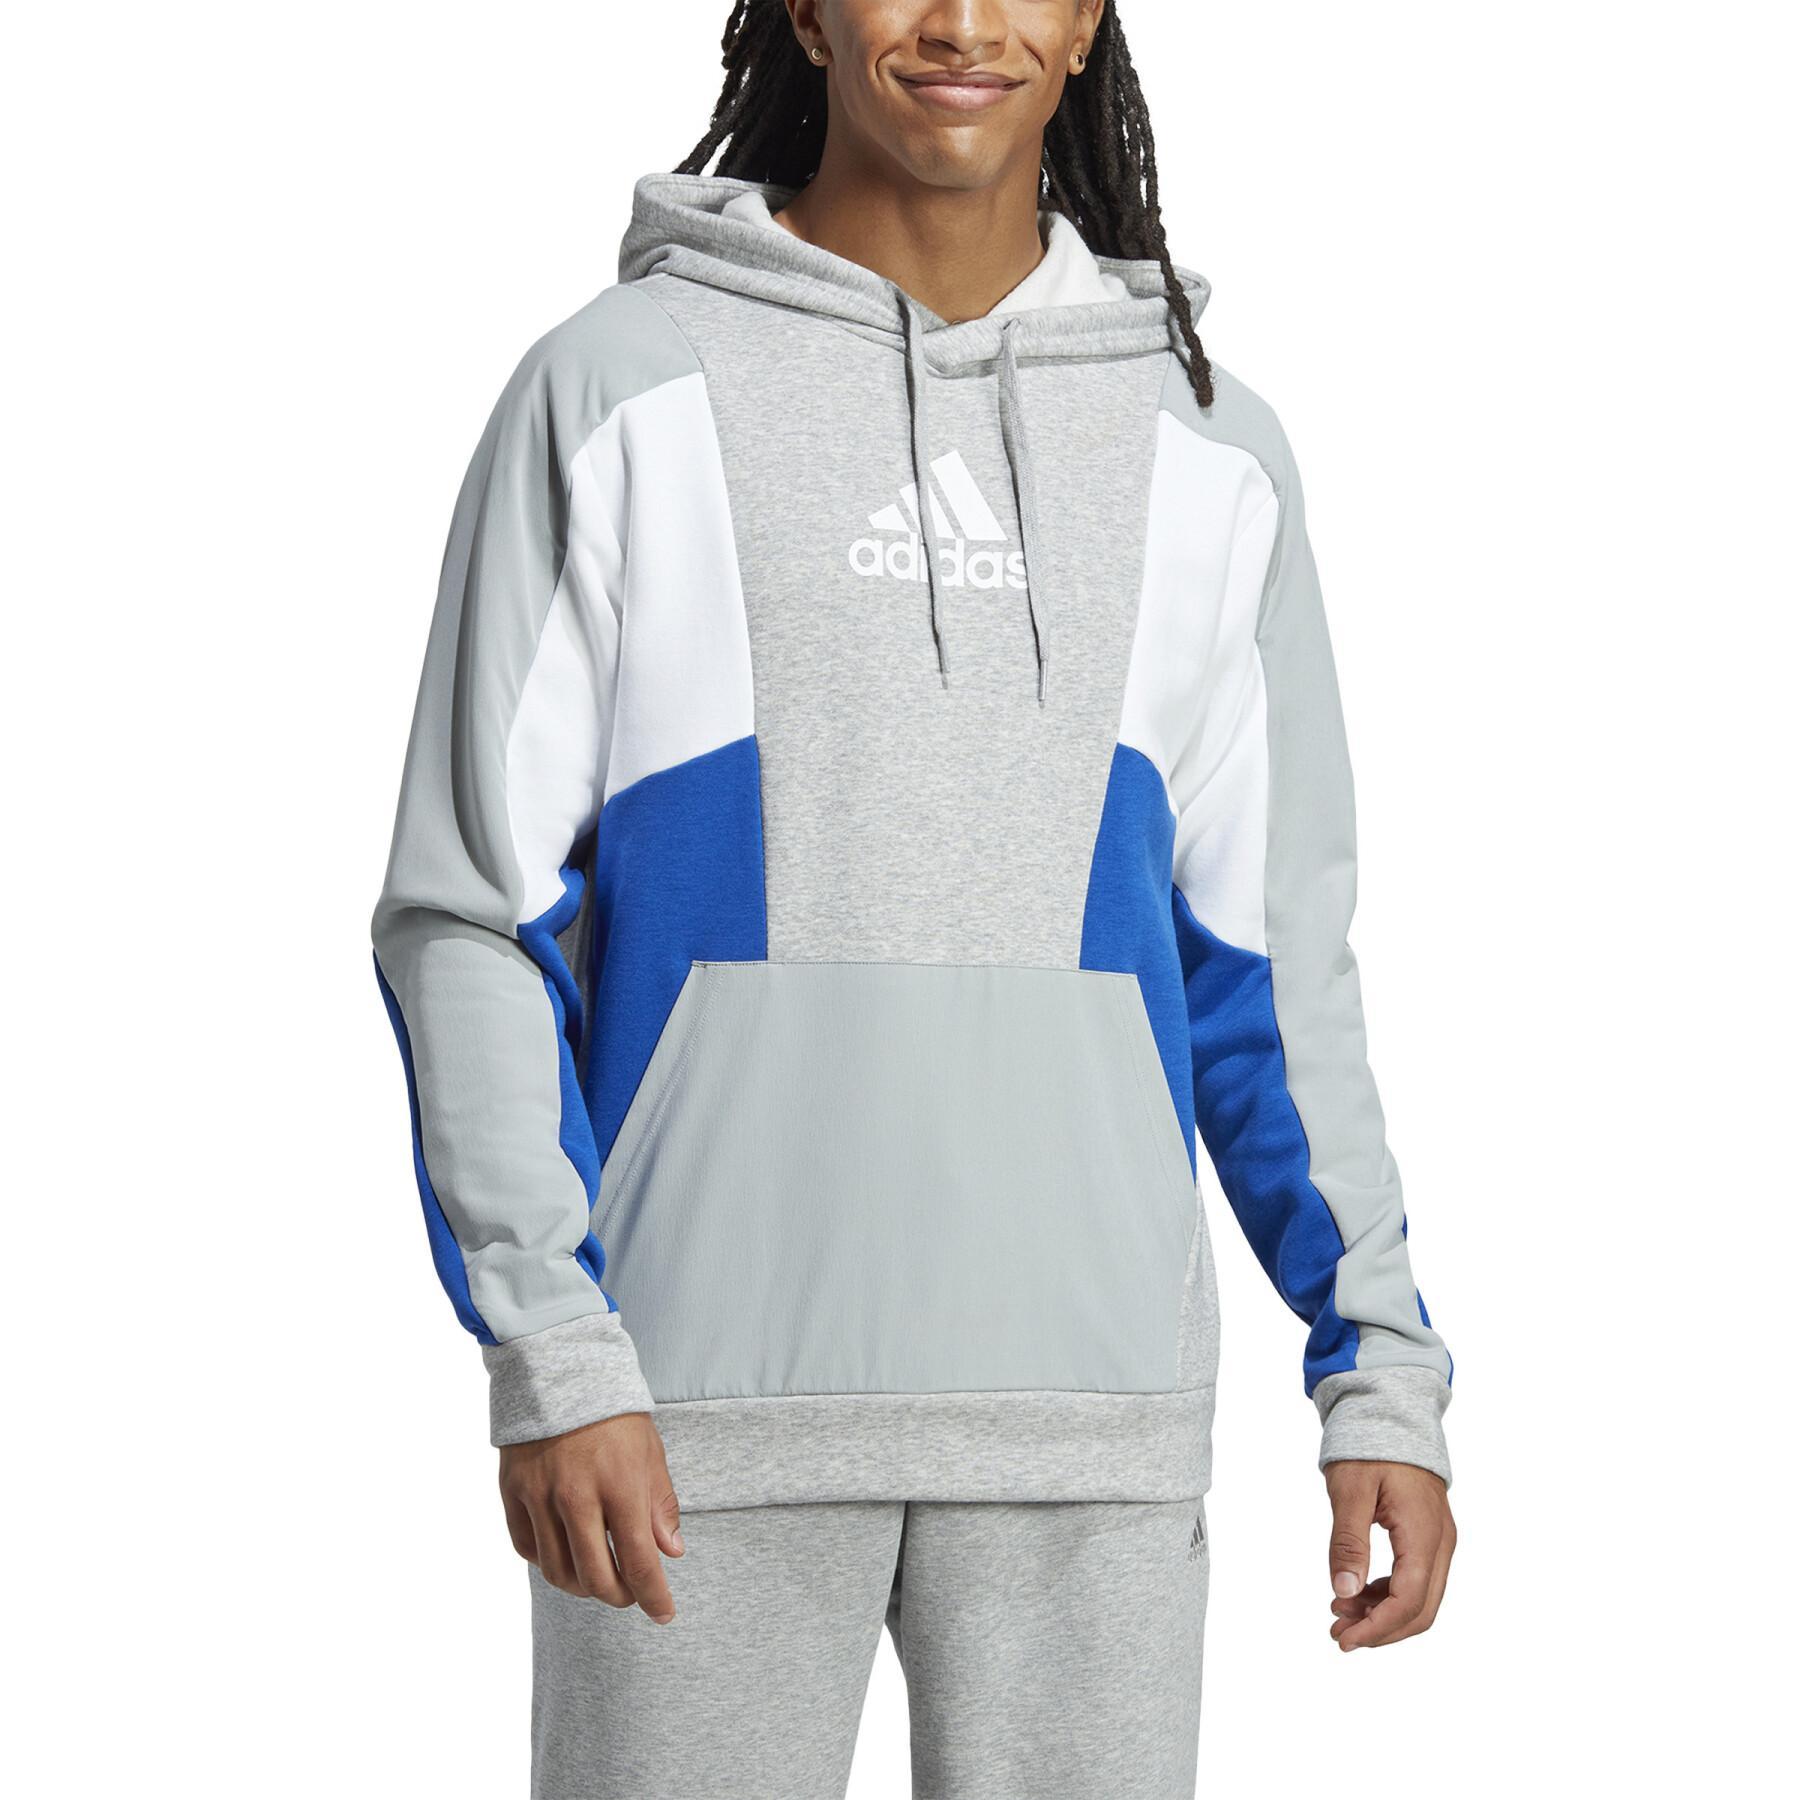 Puntero salto Completamente seco Sweatshirt con capucha adidas Essentials Colorblock - adidas - Tops de  entrenamiento - Teamwear